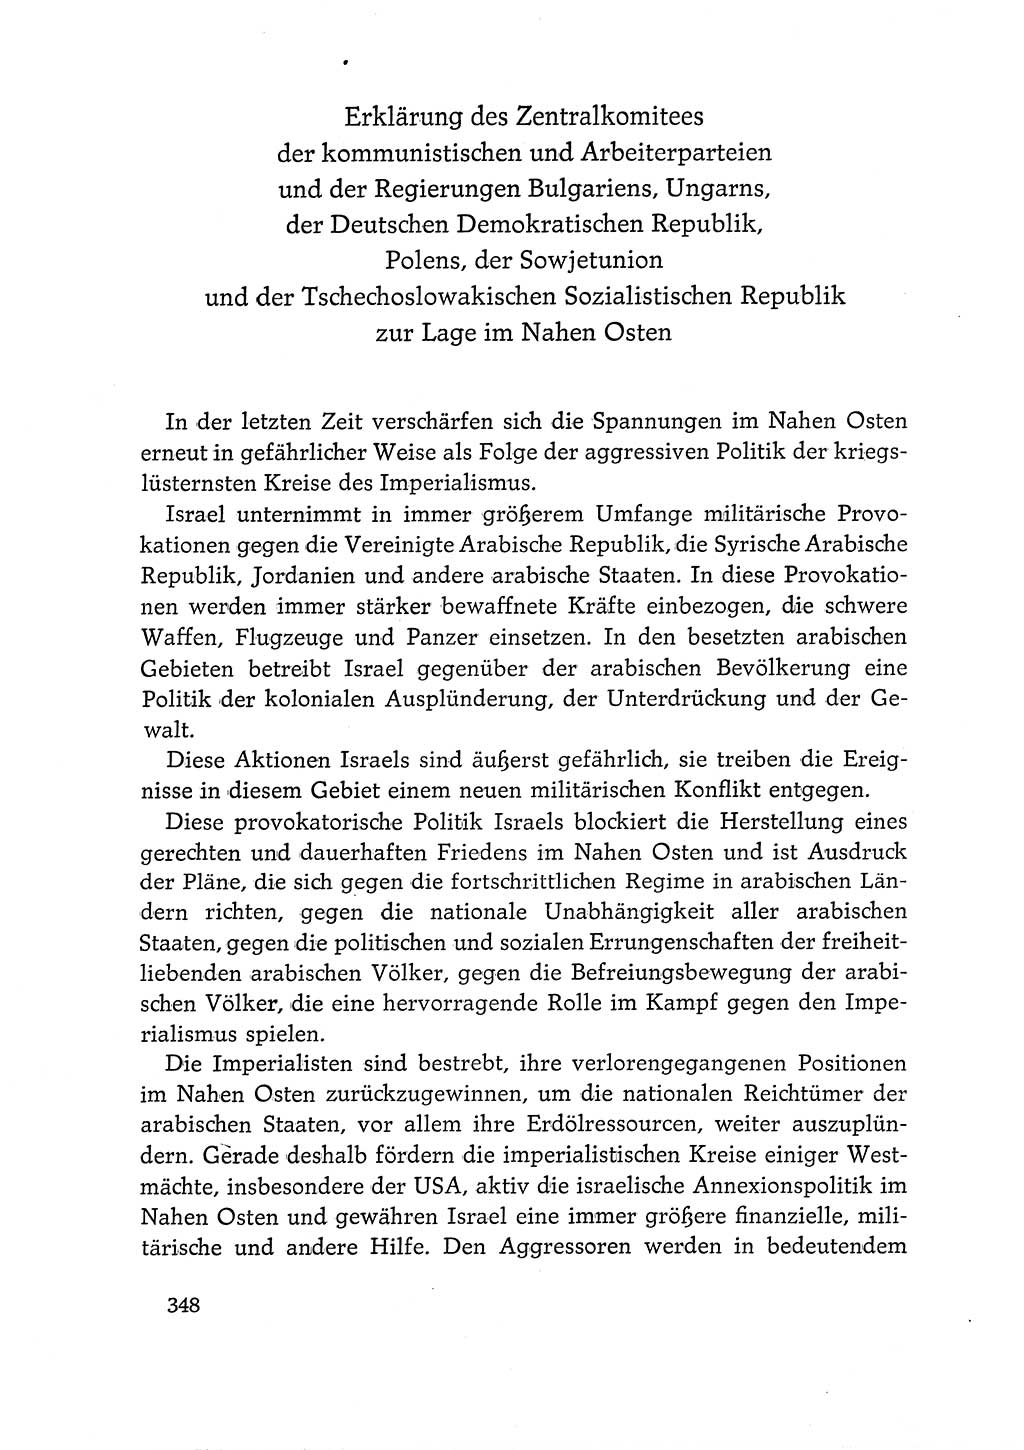 Dokumente der Sozialistischen Einheitspartei Deutschlands (SED) [Deutsche Demokratische Republik (DDR)] 1968-1969, Seite 348 (Dok. SED DDR 1968-1969, S. 348)